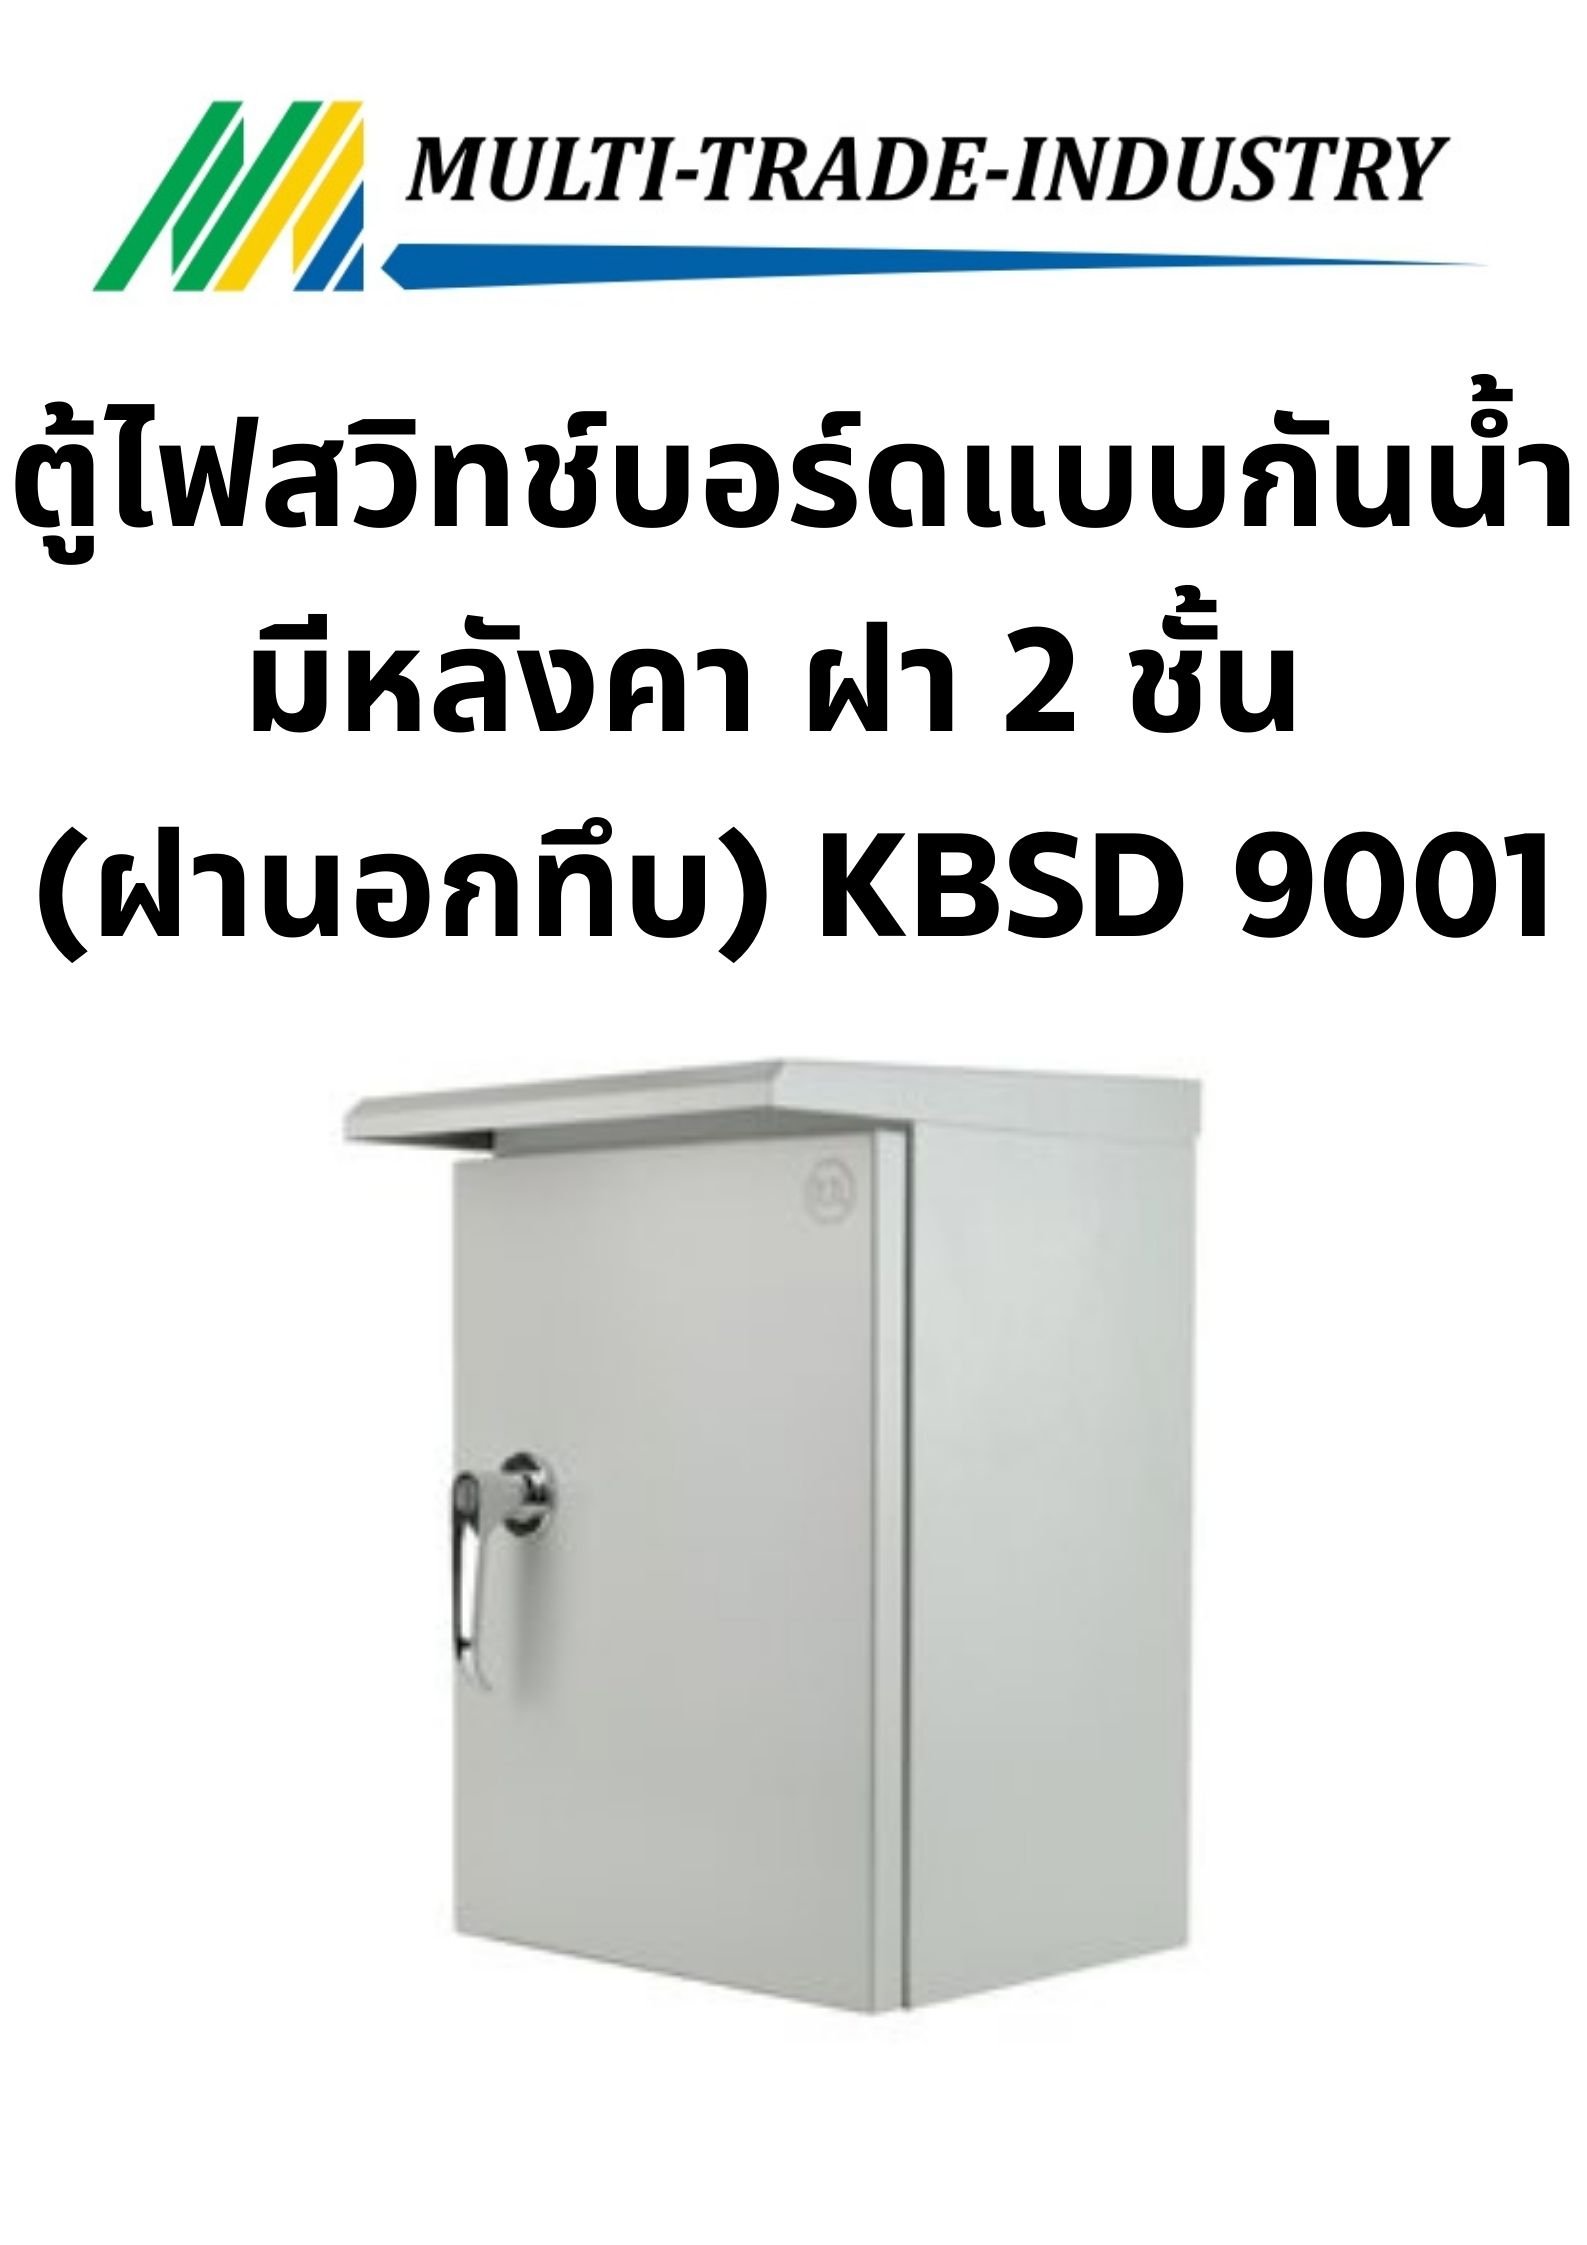 ตู้ไฟสวิทช์บอร์ดแบบกันน้ำมีหลังคา ฝา 2 ชั้น (ฝานอกทึบ) KBSD 9001 ขนาด 300x450x250 mm.